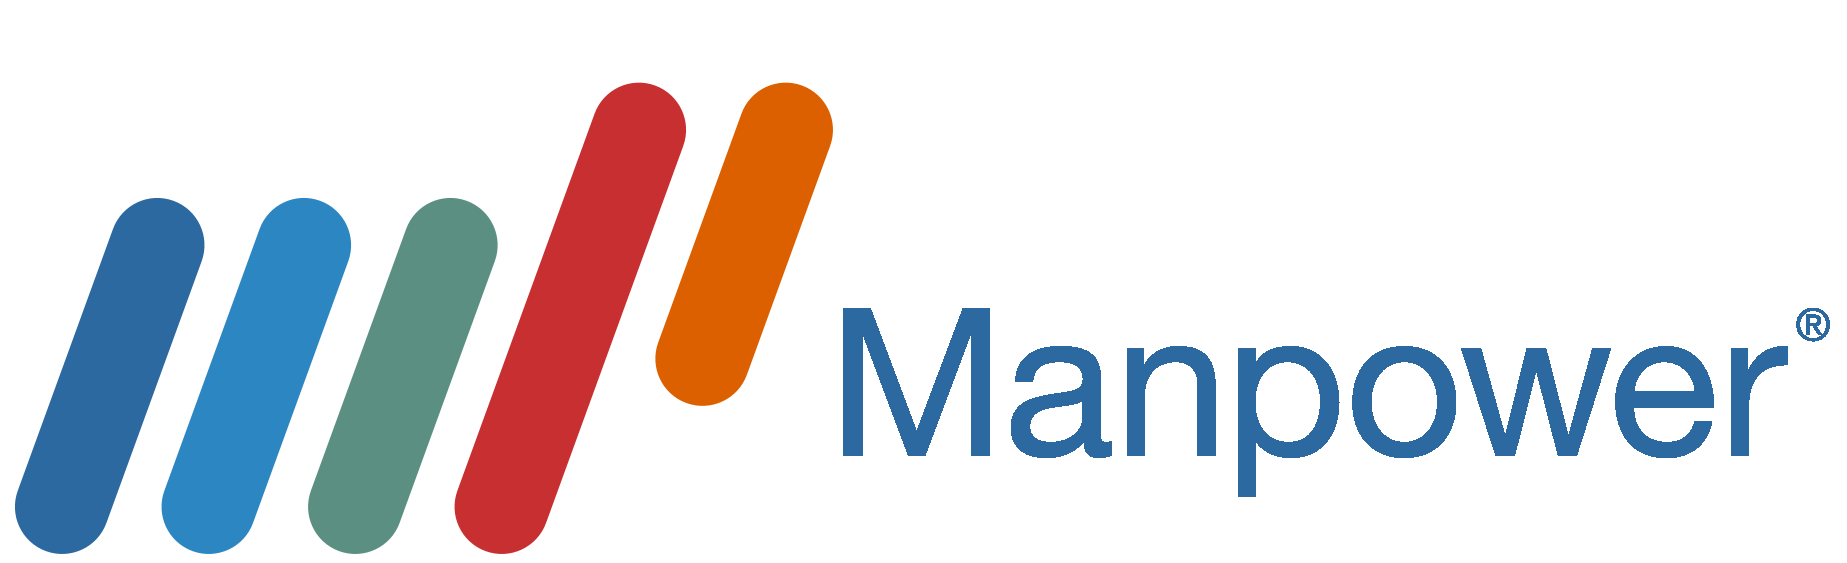 Manpower Logo - Manpower Logos